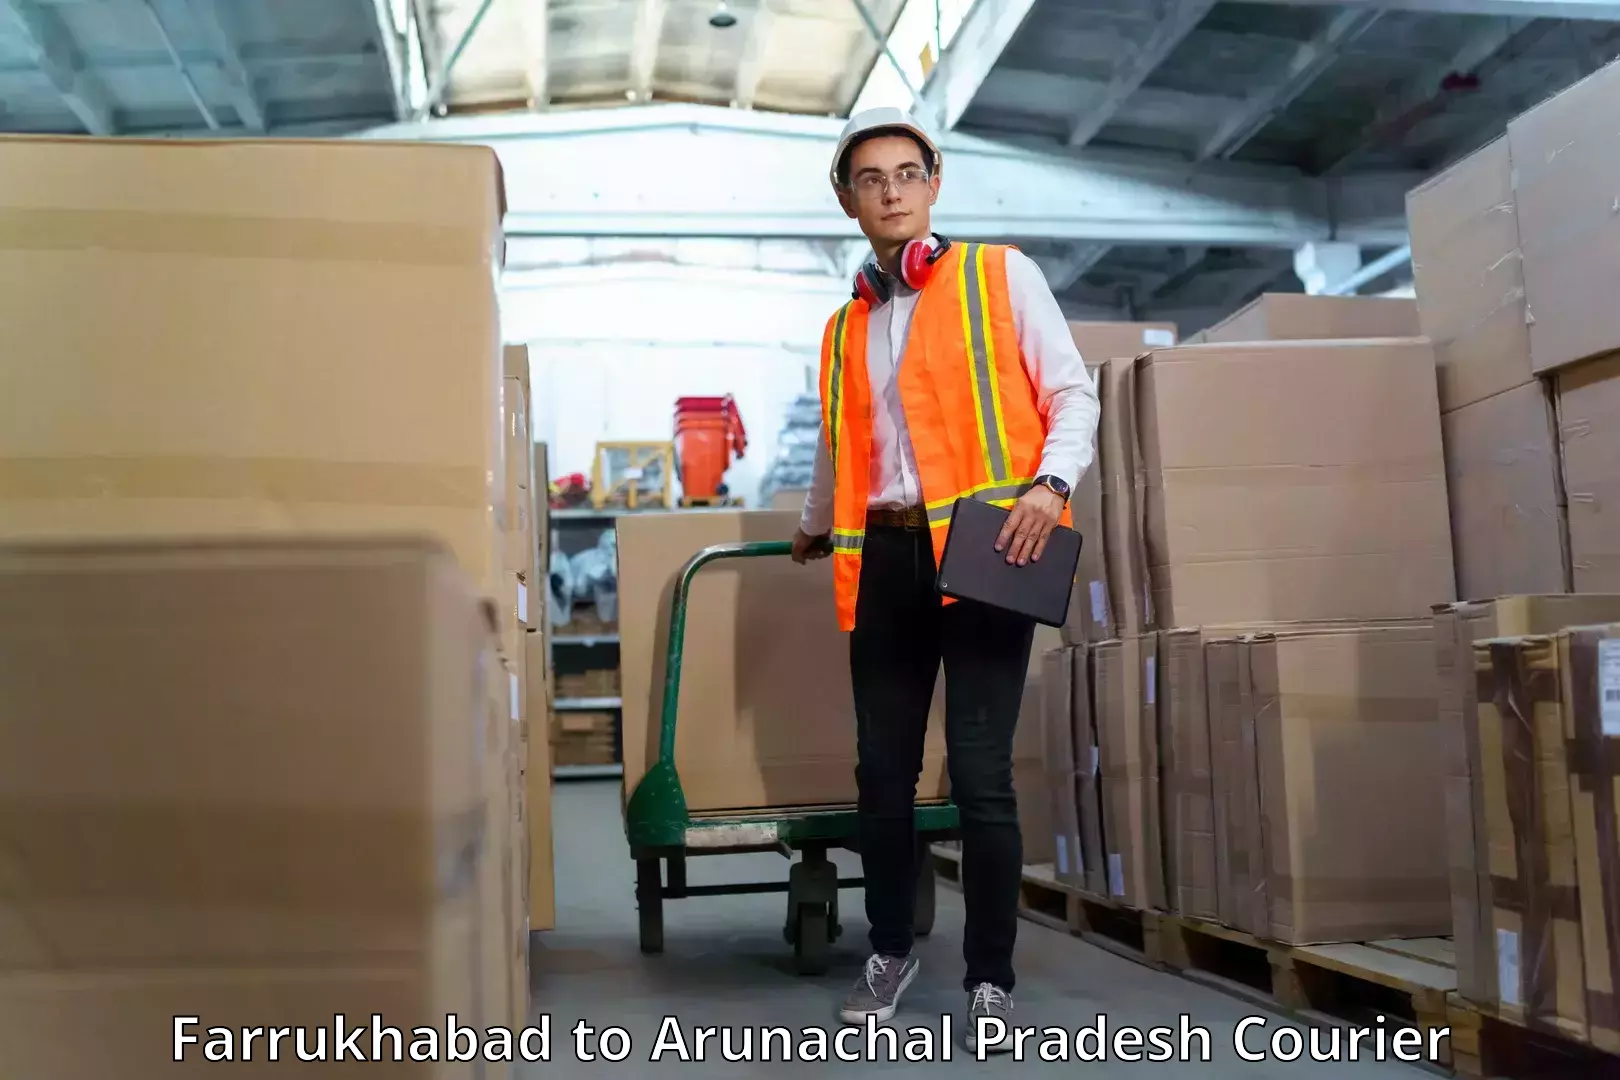 Courier service innovation in Farrukhabad to Arunachal Pradesh